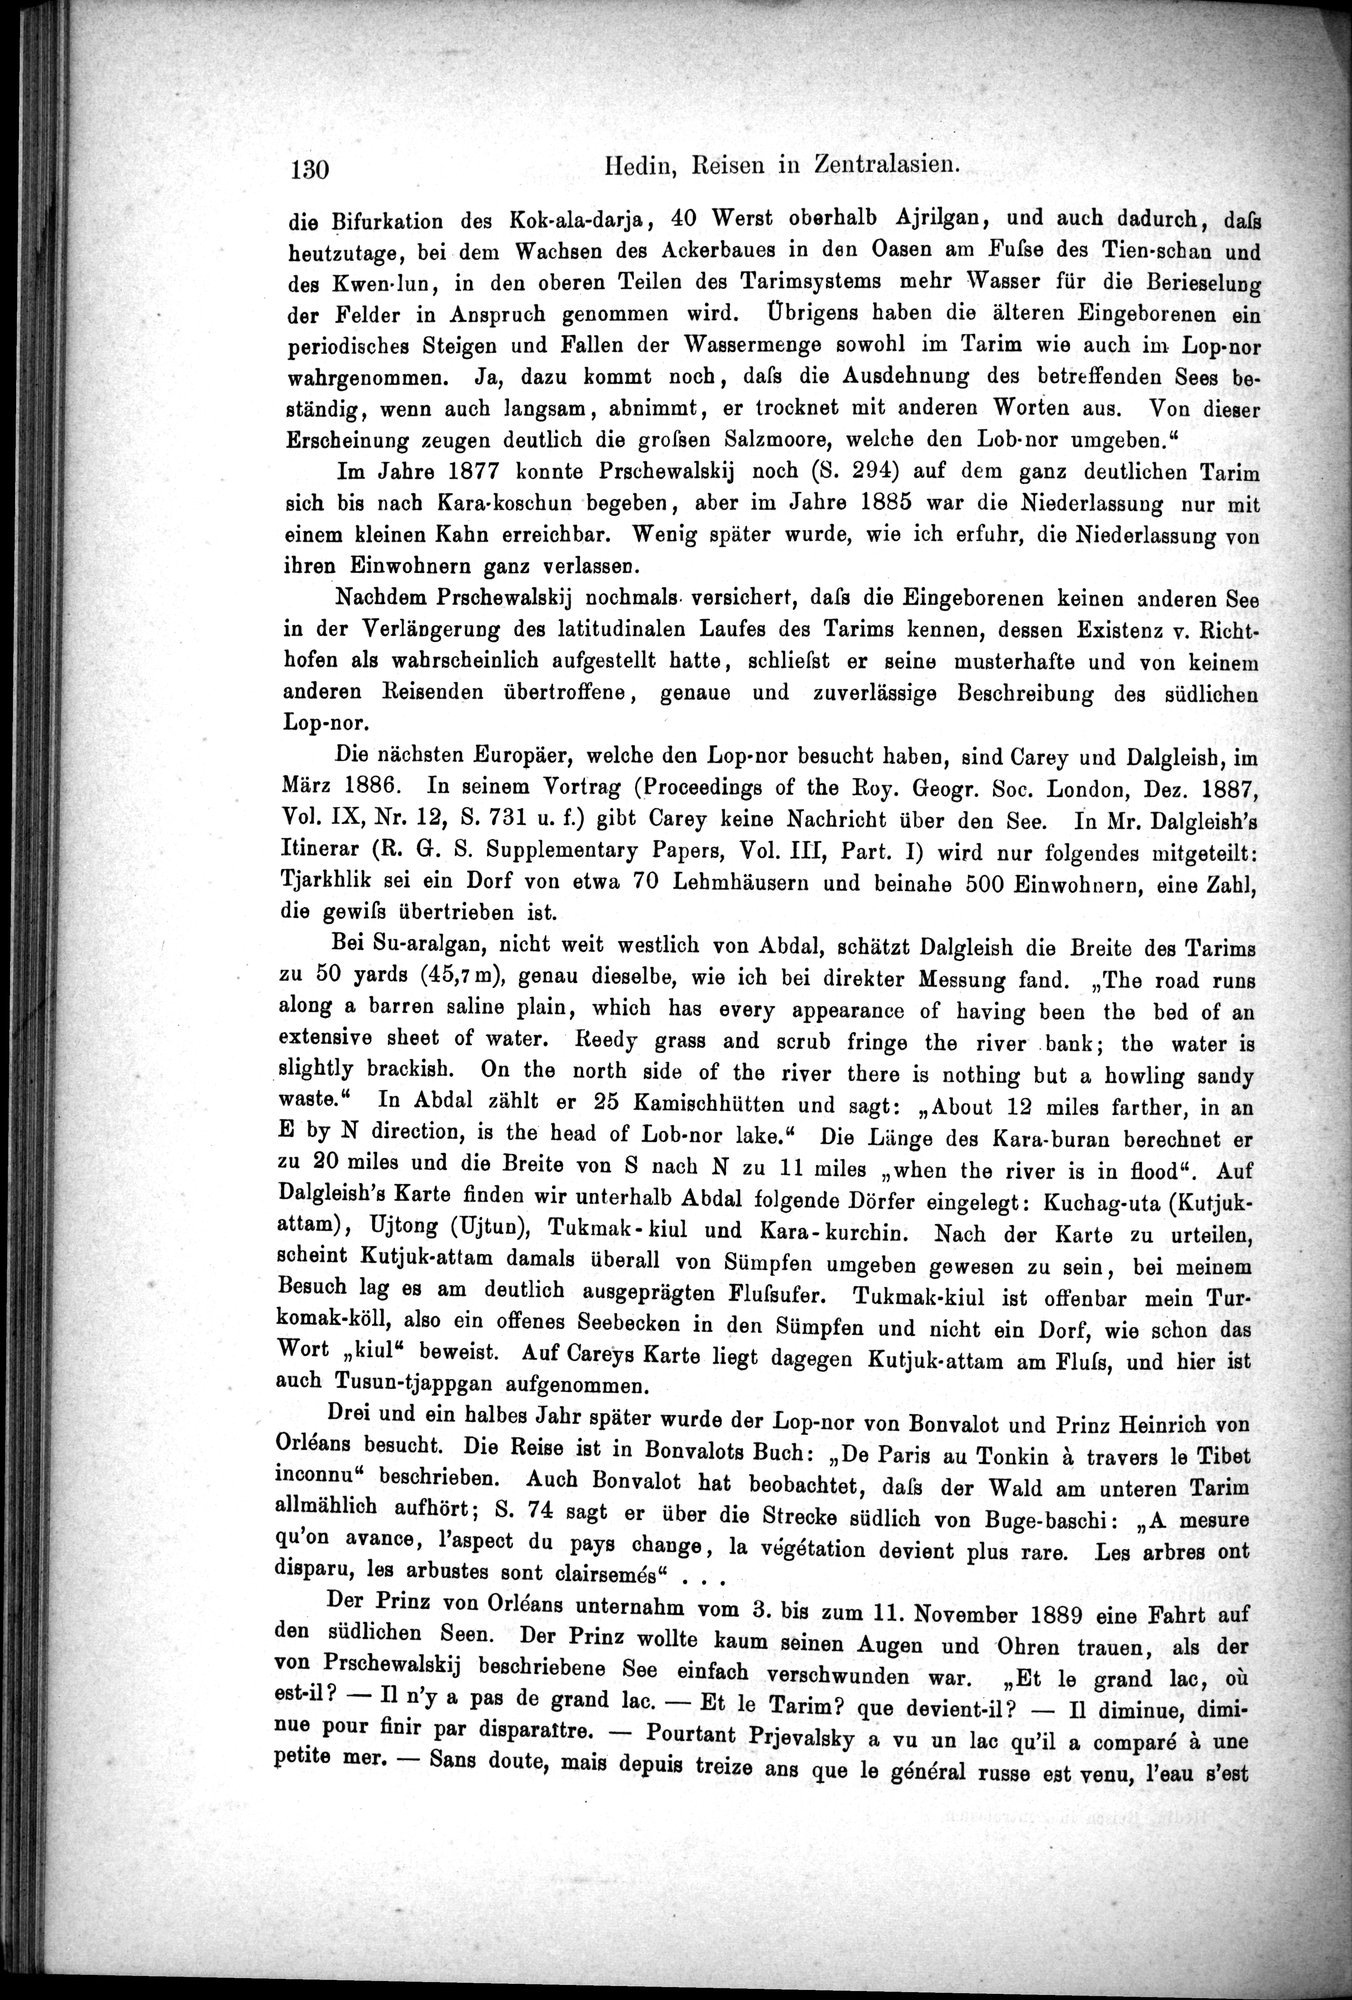 Die Geographische-Wissenschaftlichen Ergebnisse meiner Reisen in Zentralasien, 1894-1897 : vol.1 / Page 142 (Grayscale High Resolution Image)